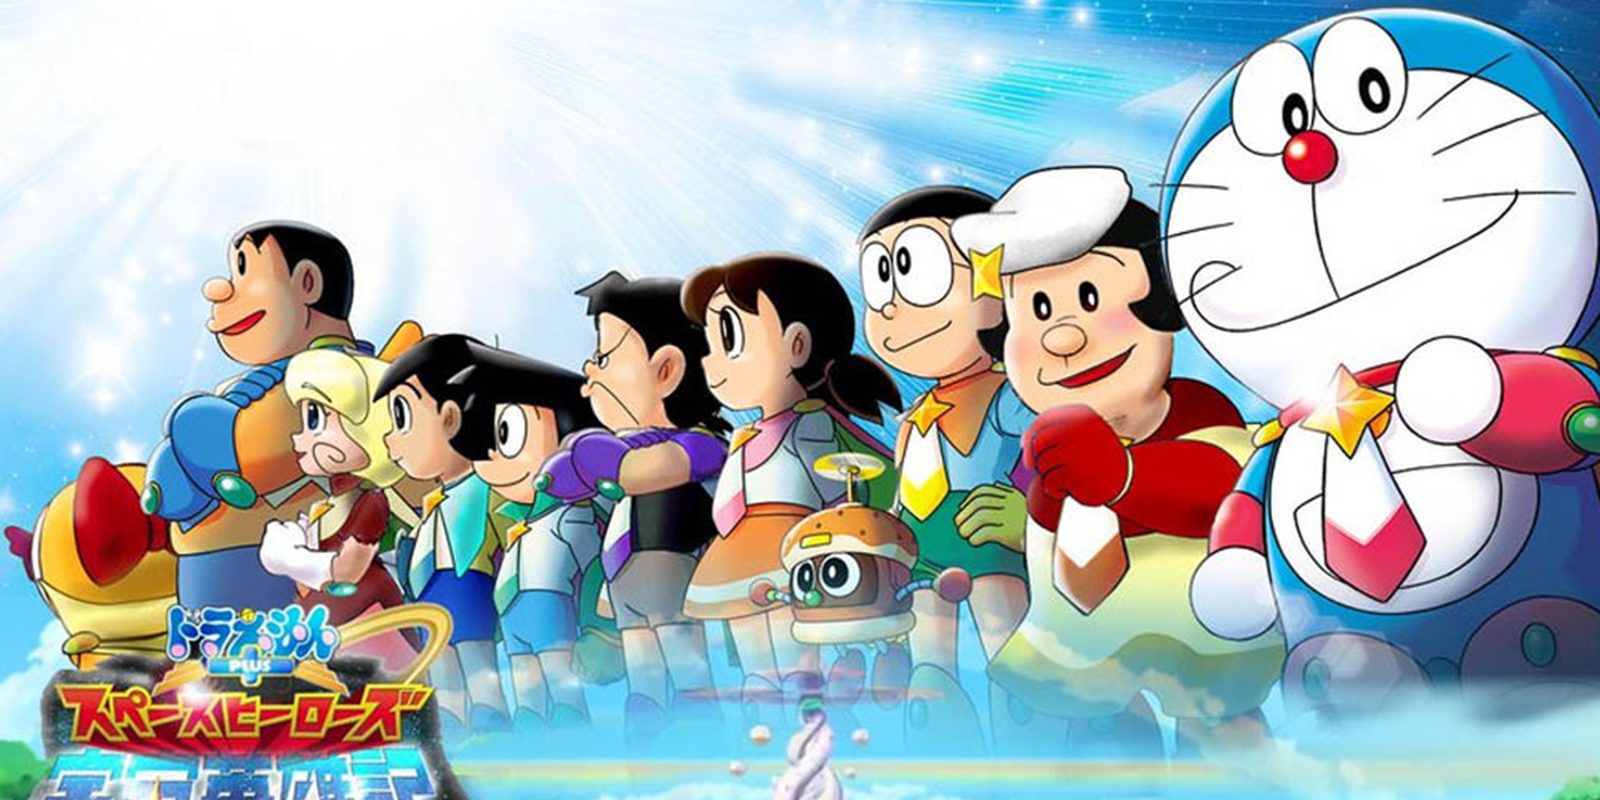 Fiesta de 'Doraemon' y Boing en Madrid este fin de semana